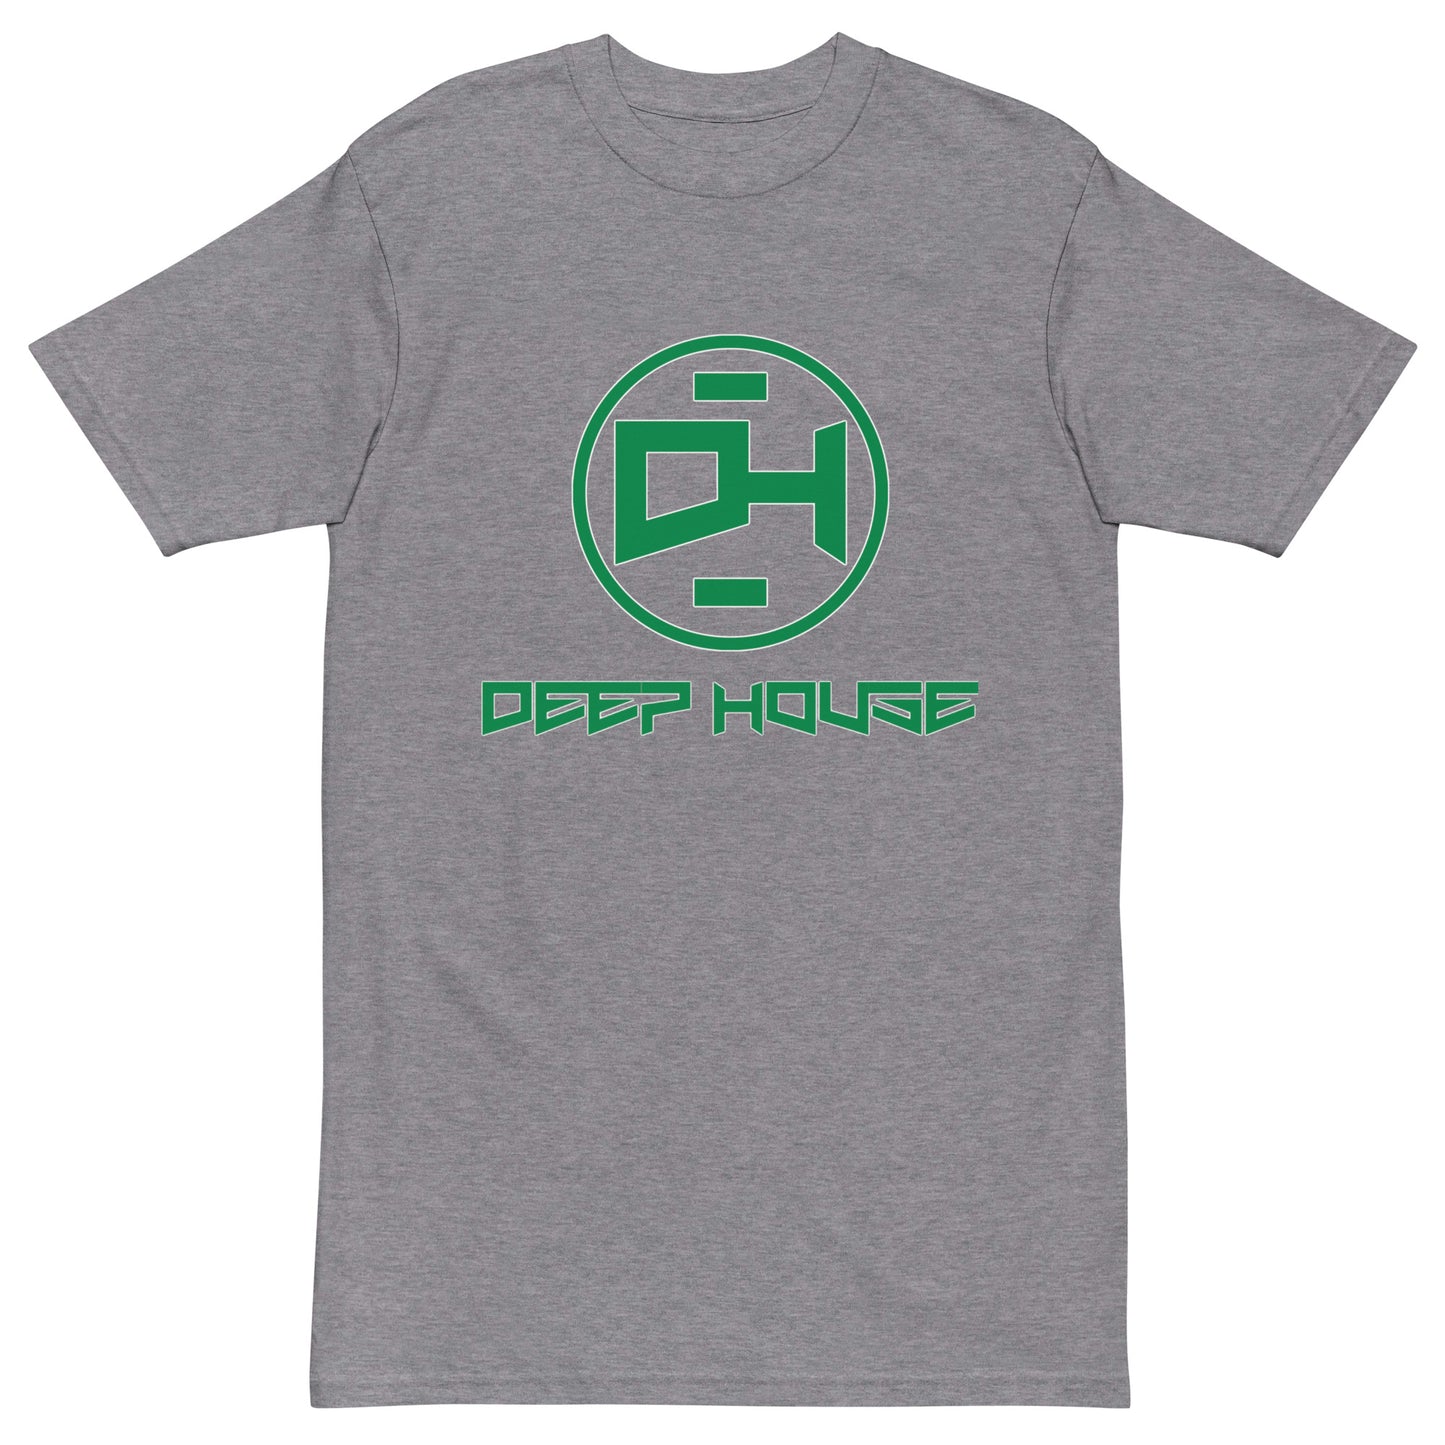 Deep House Short Sleeve